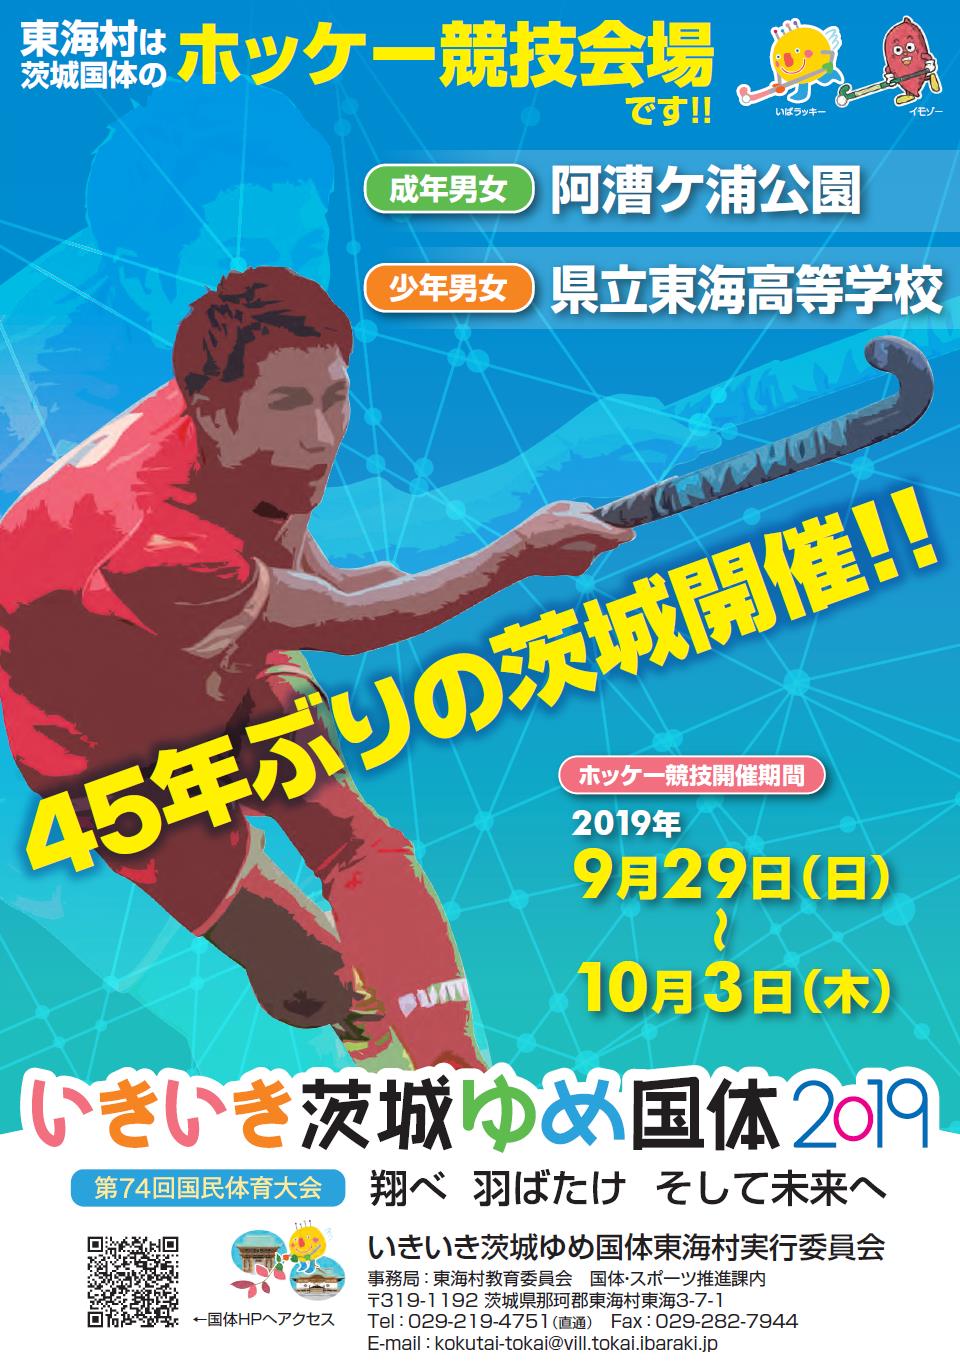 ホッケーをしている選手が描かれたいきいき茨城ゆめ国体のポスター